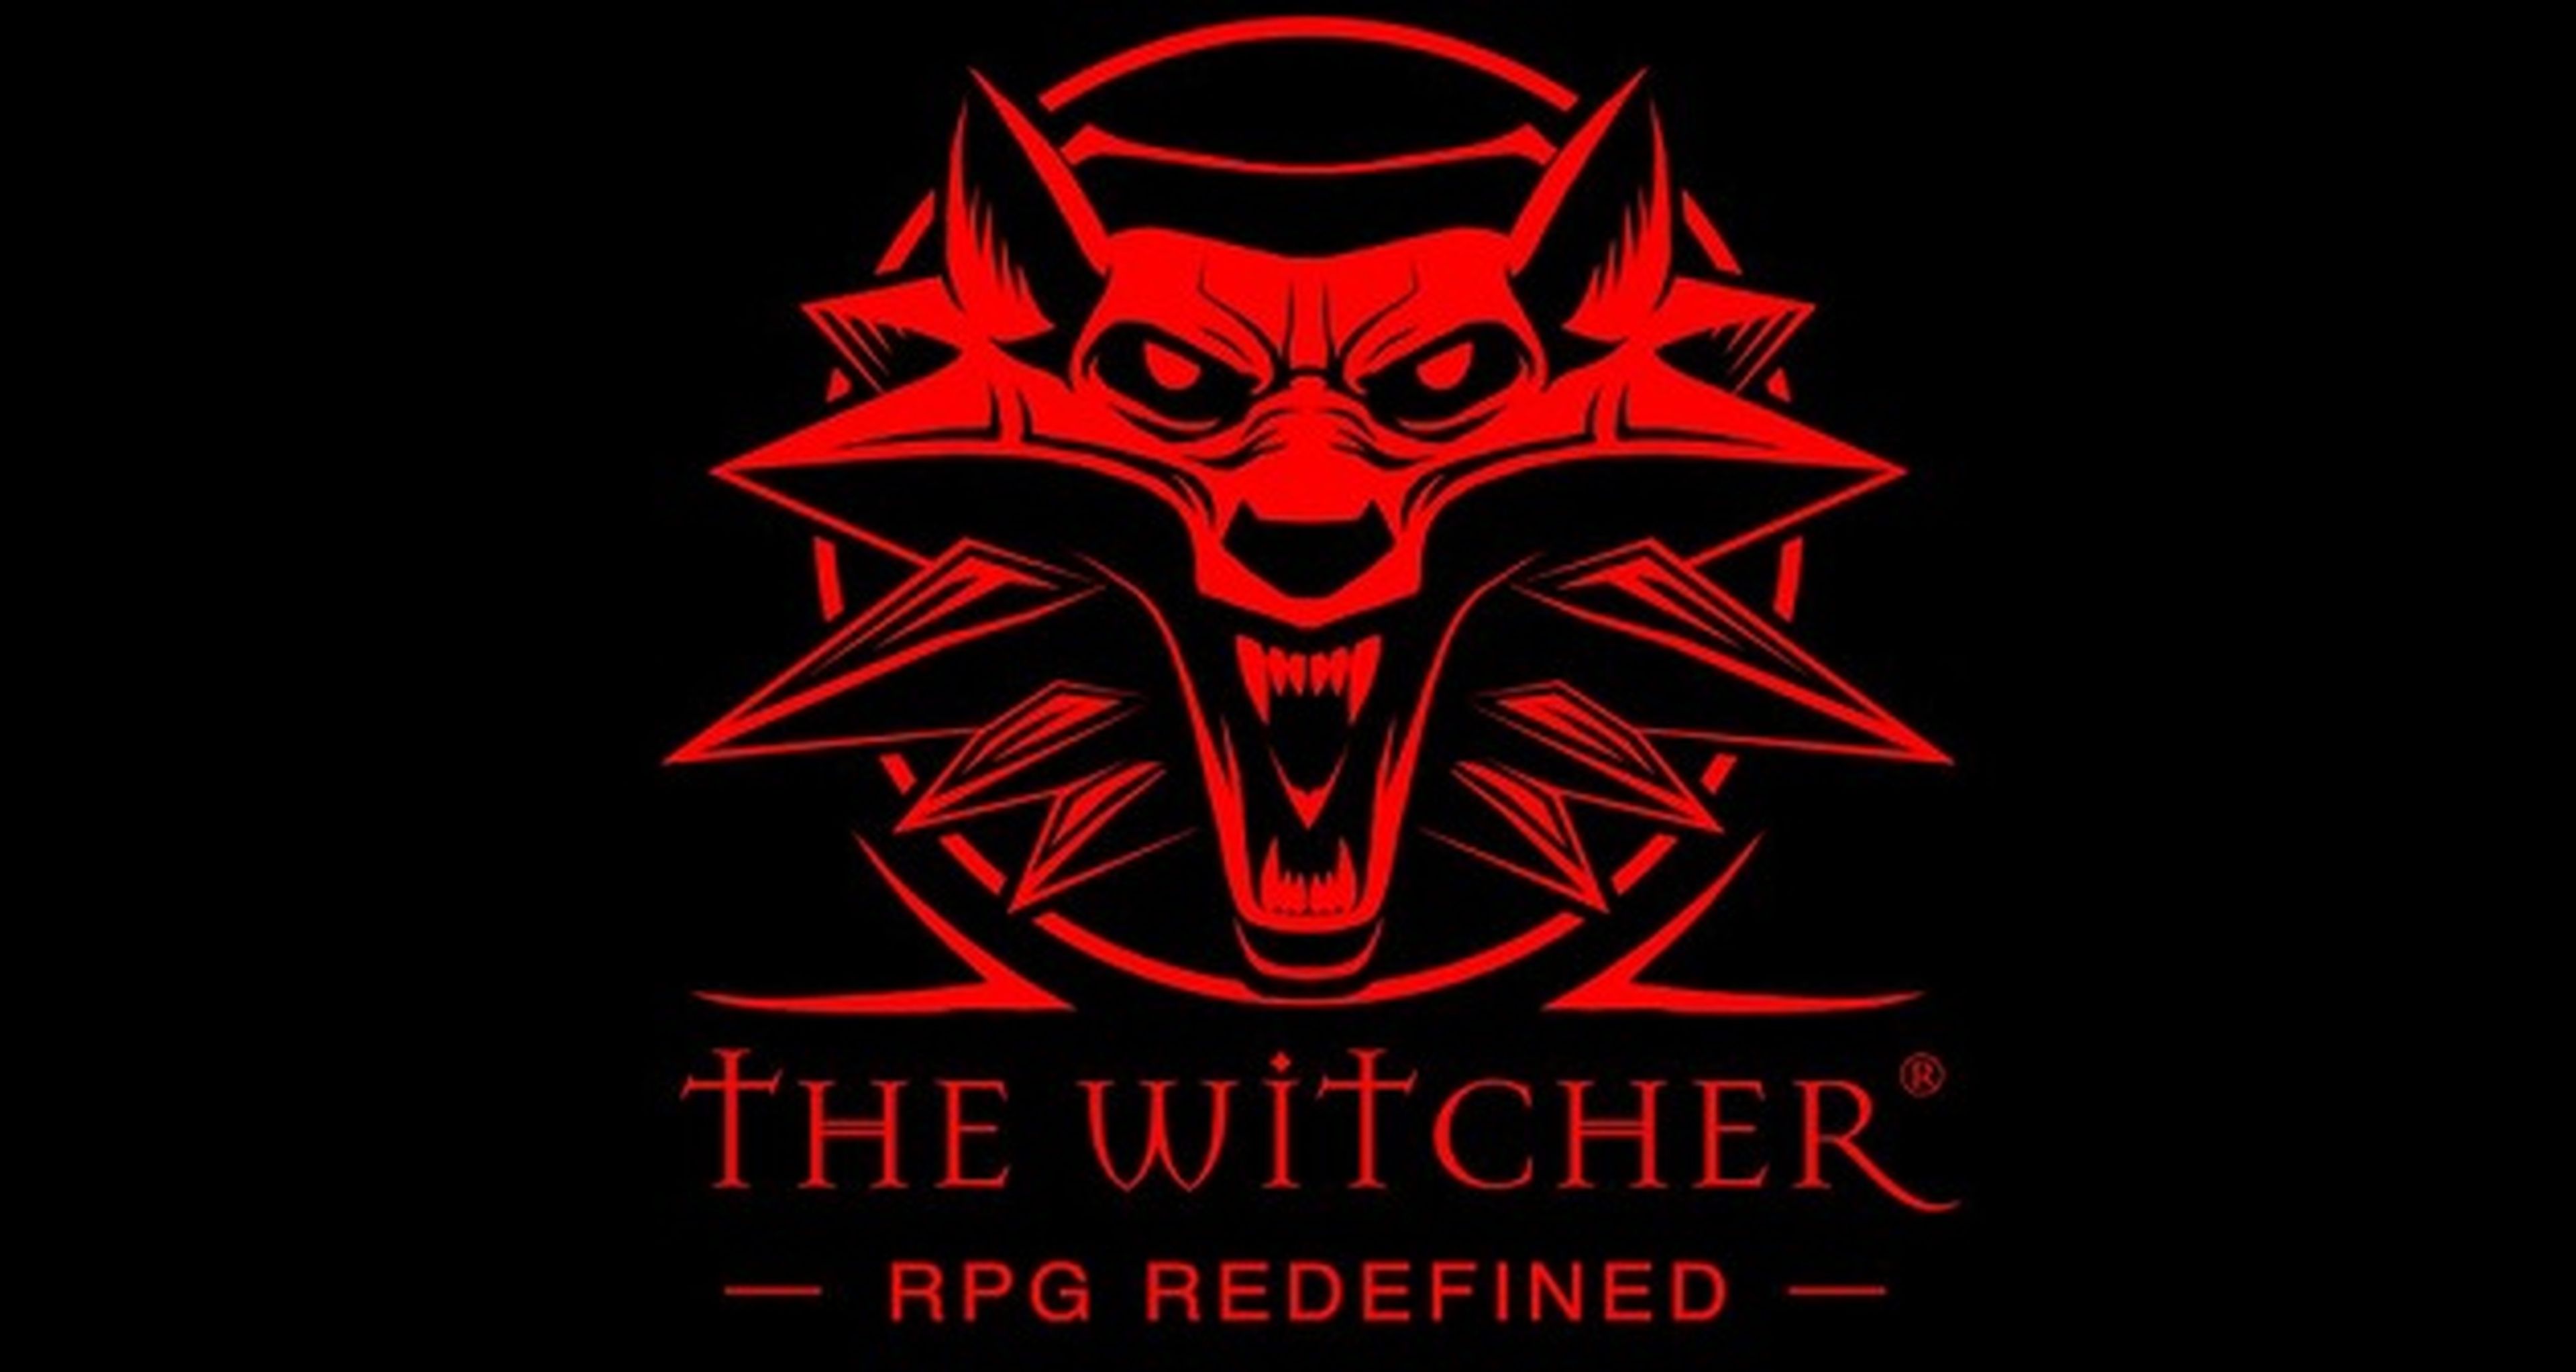 Juega a The Witcher 1 y 2 gratis este fin de semana en Steam